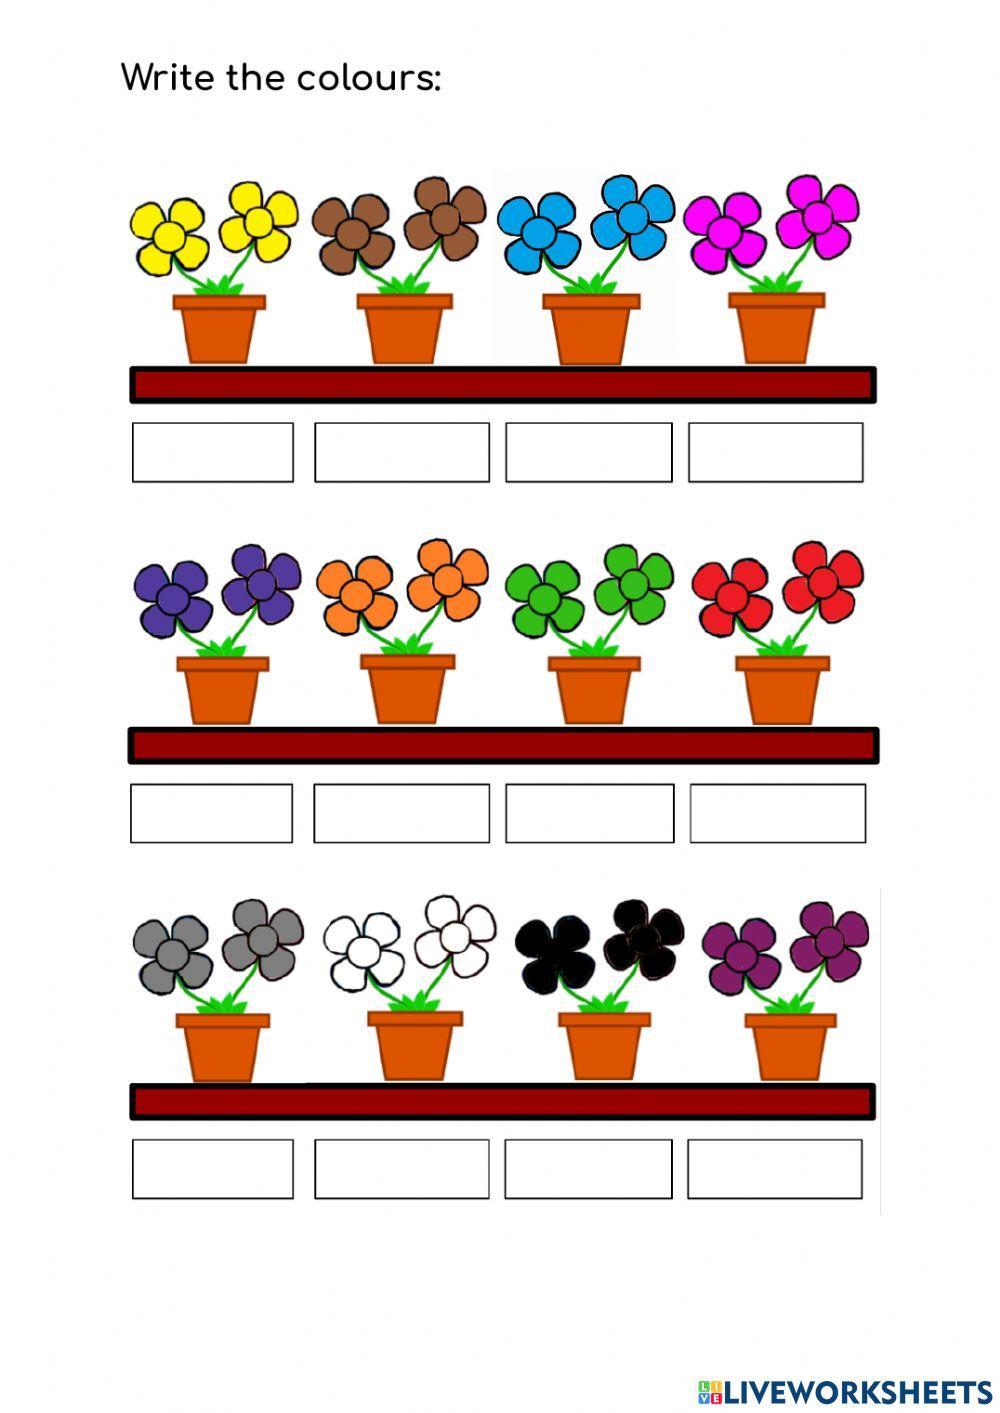 Colours - flowers